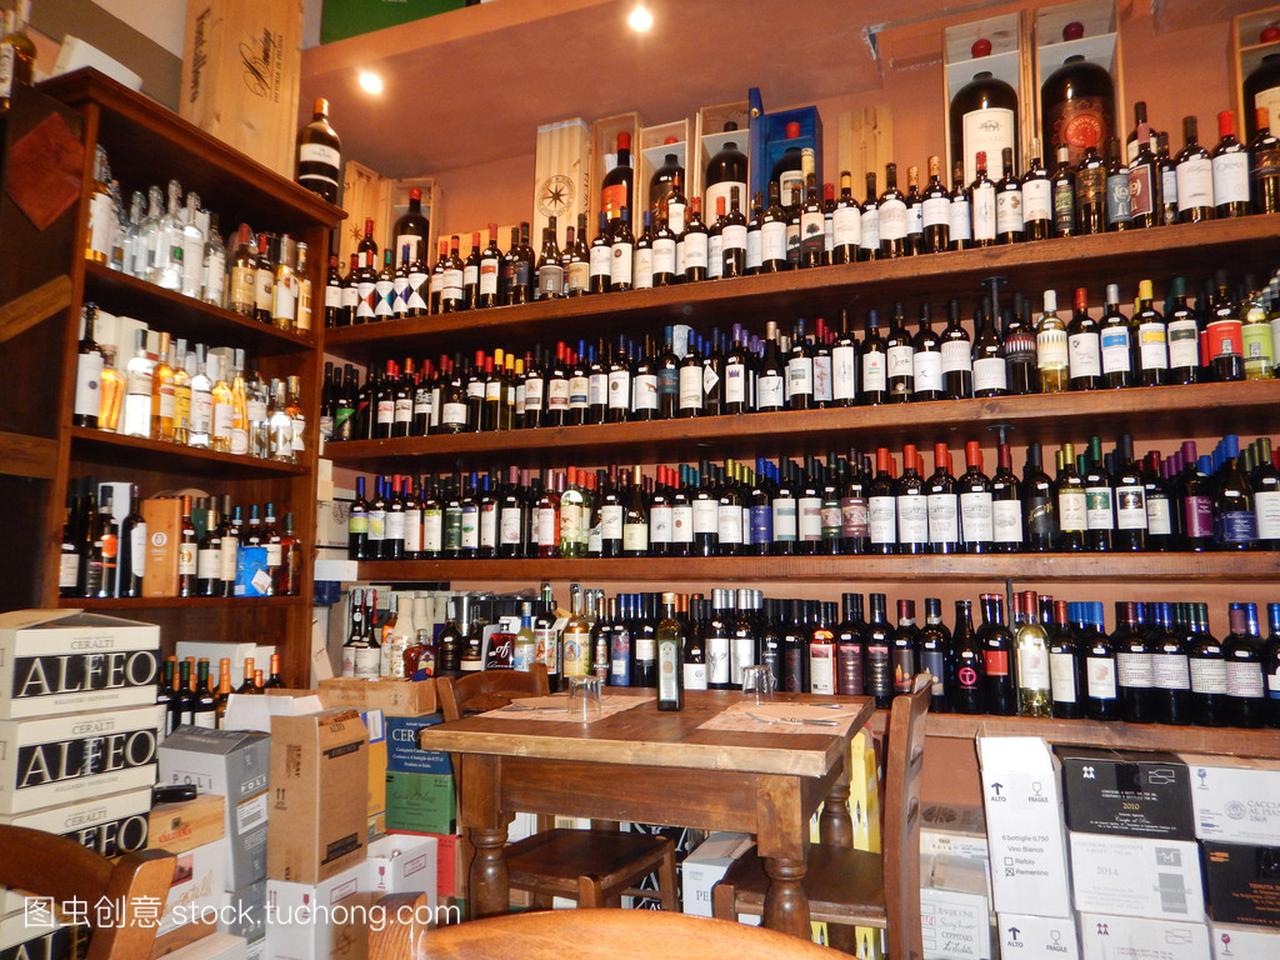 在 medieva 的葡萄酒商店 Bolgheri,意大利-201